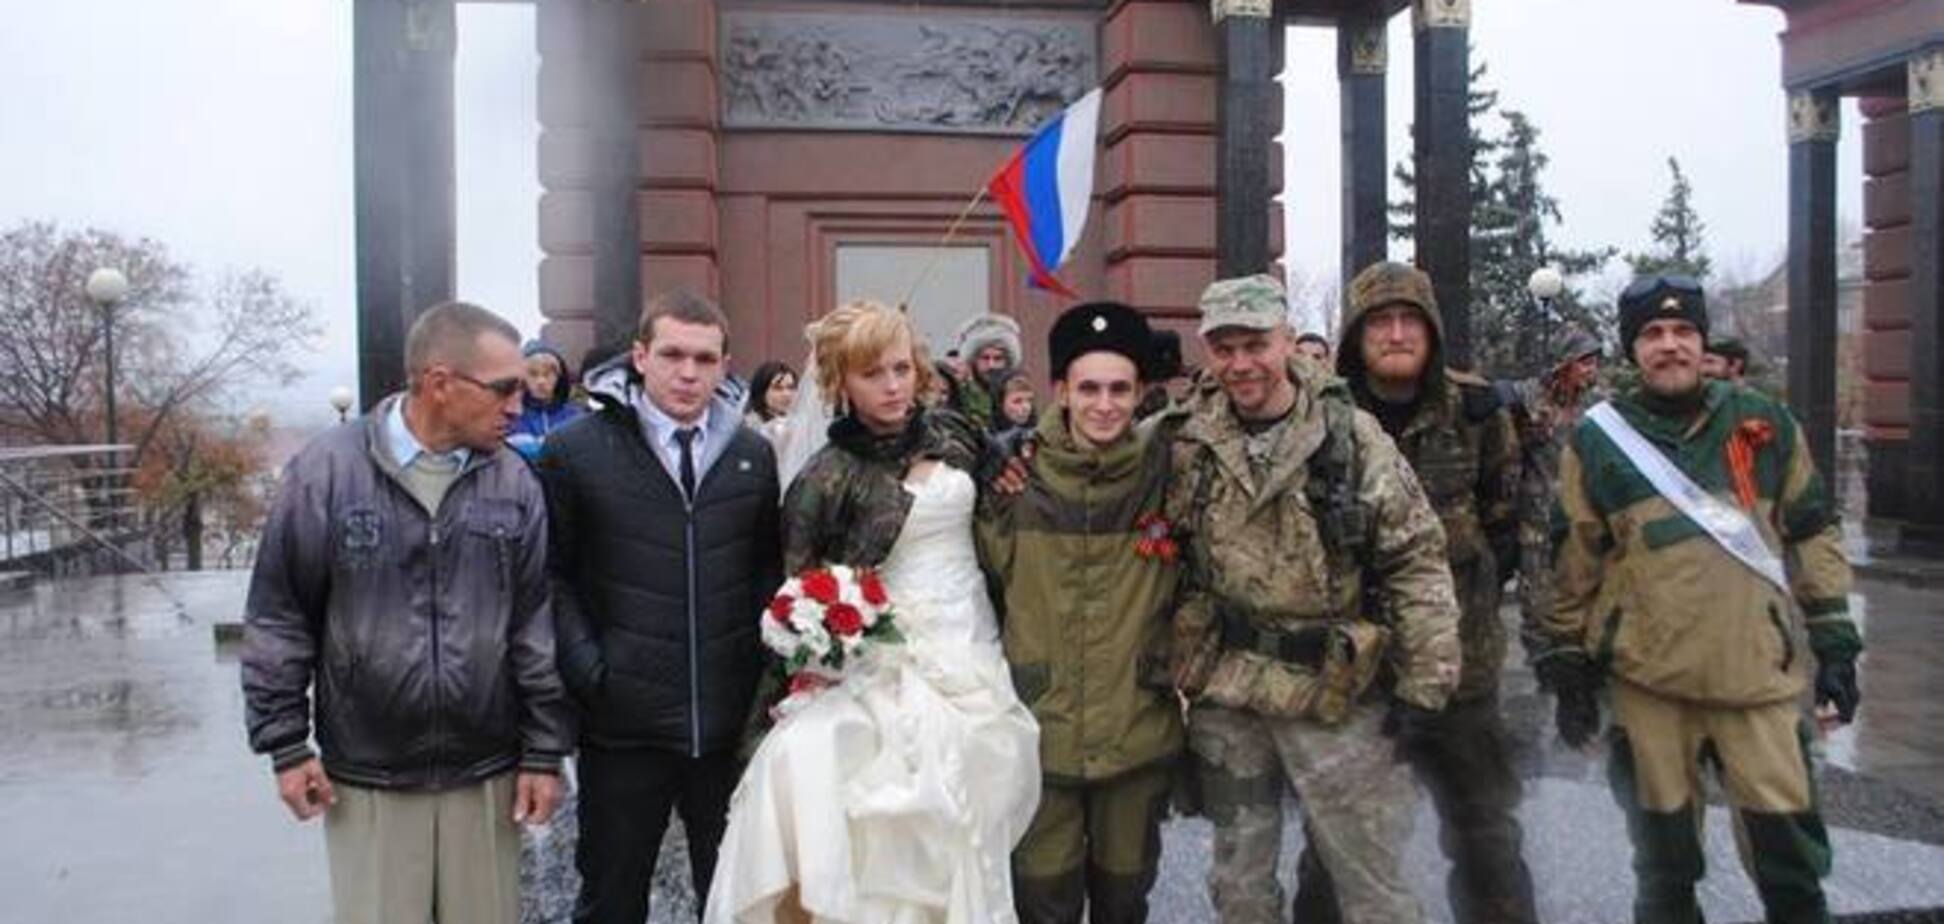 'ТерроРожи': в сети появились фото еще одной свадьбы боевиков 'ЛНР'